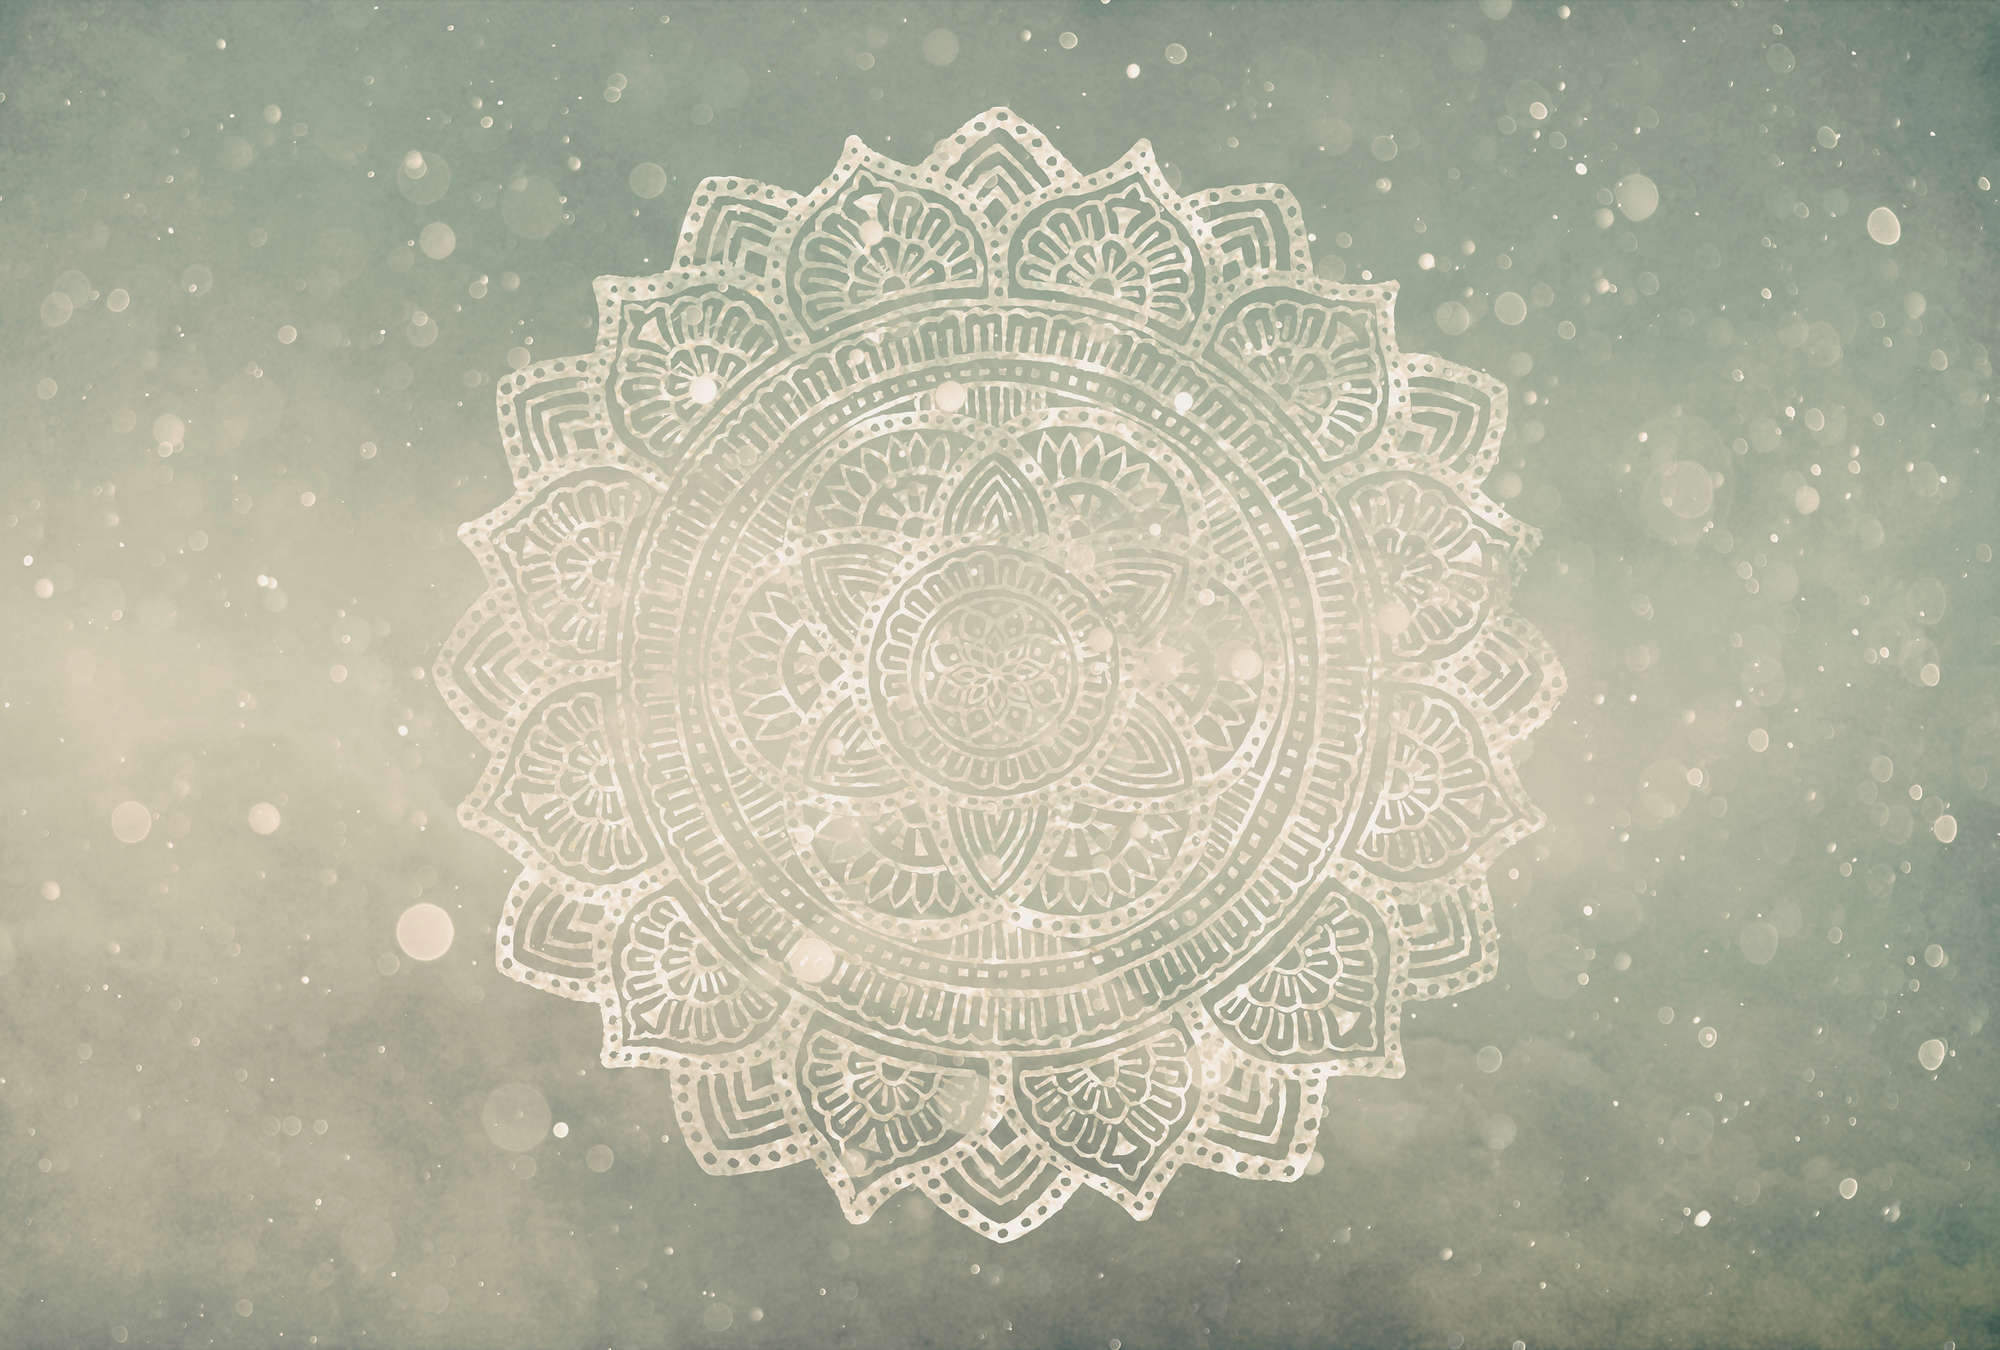             Fototapete Mandala im Boho Style – Grau, Beige, Weiß
        